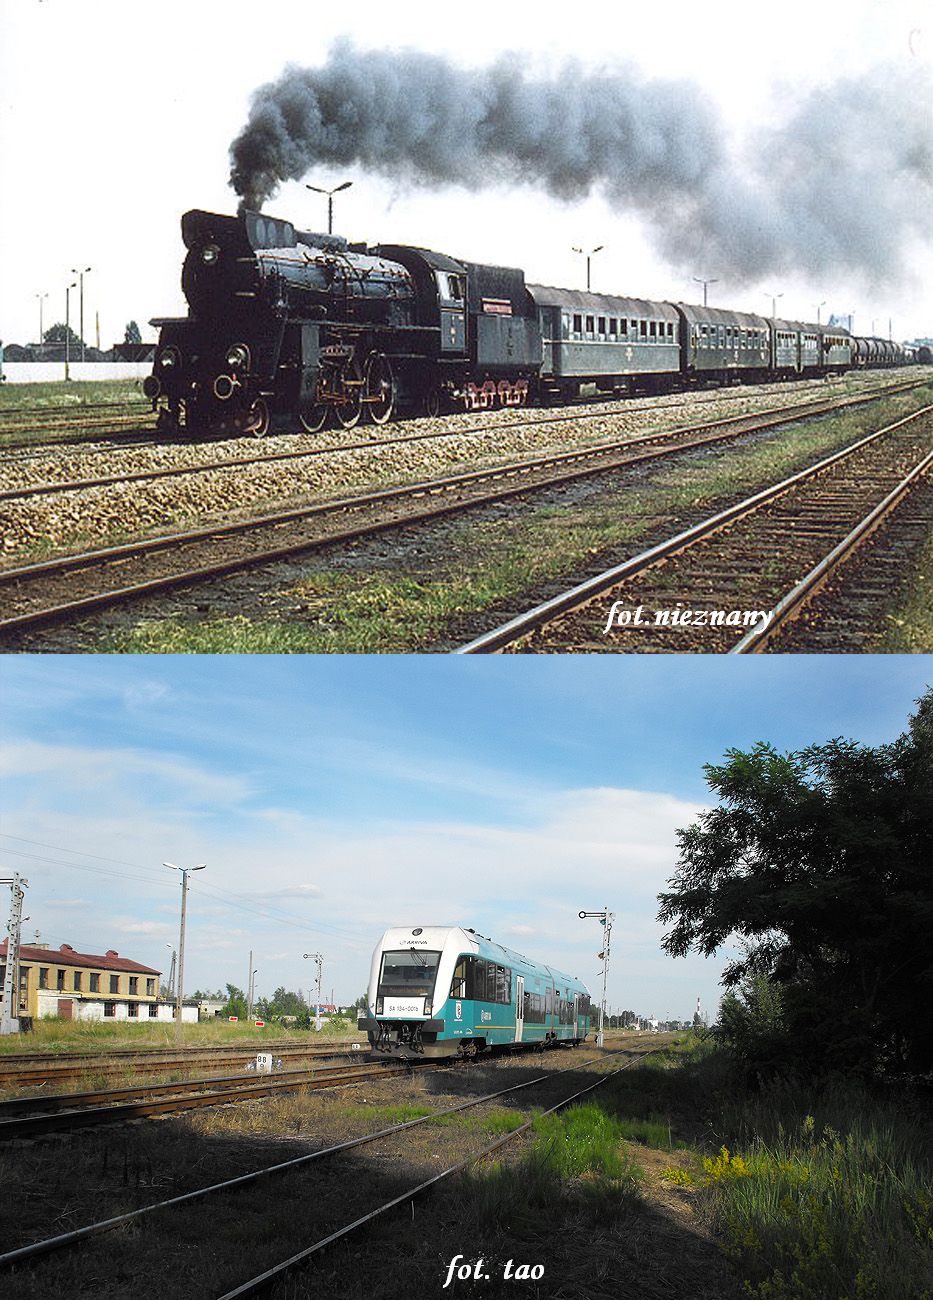 Stacja Sierpc. Jeden z ostatnich składów osobowych ery pary w Sierpcu zmierzający w kierunku Torunia. Foto u dołu z 2011 roku przedstawia szynobus jako pociąg osobowy również w kierunku do Torunia.